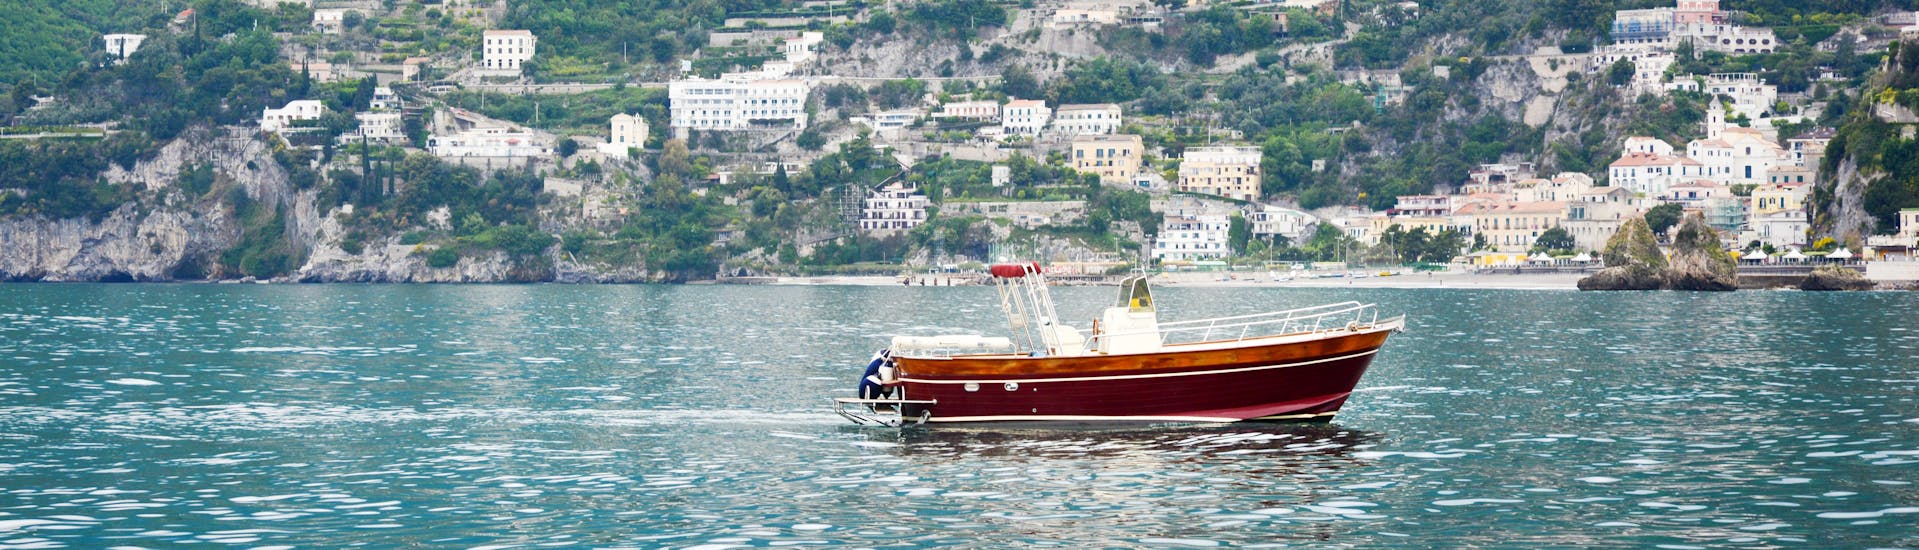 Das Boot von Blu Mediterraneo Amalfiküste während der privaten Bootstour von Salerno entlang der Amalfiküste.